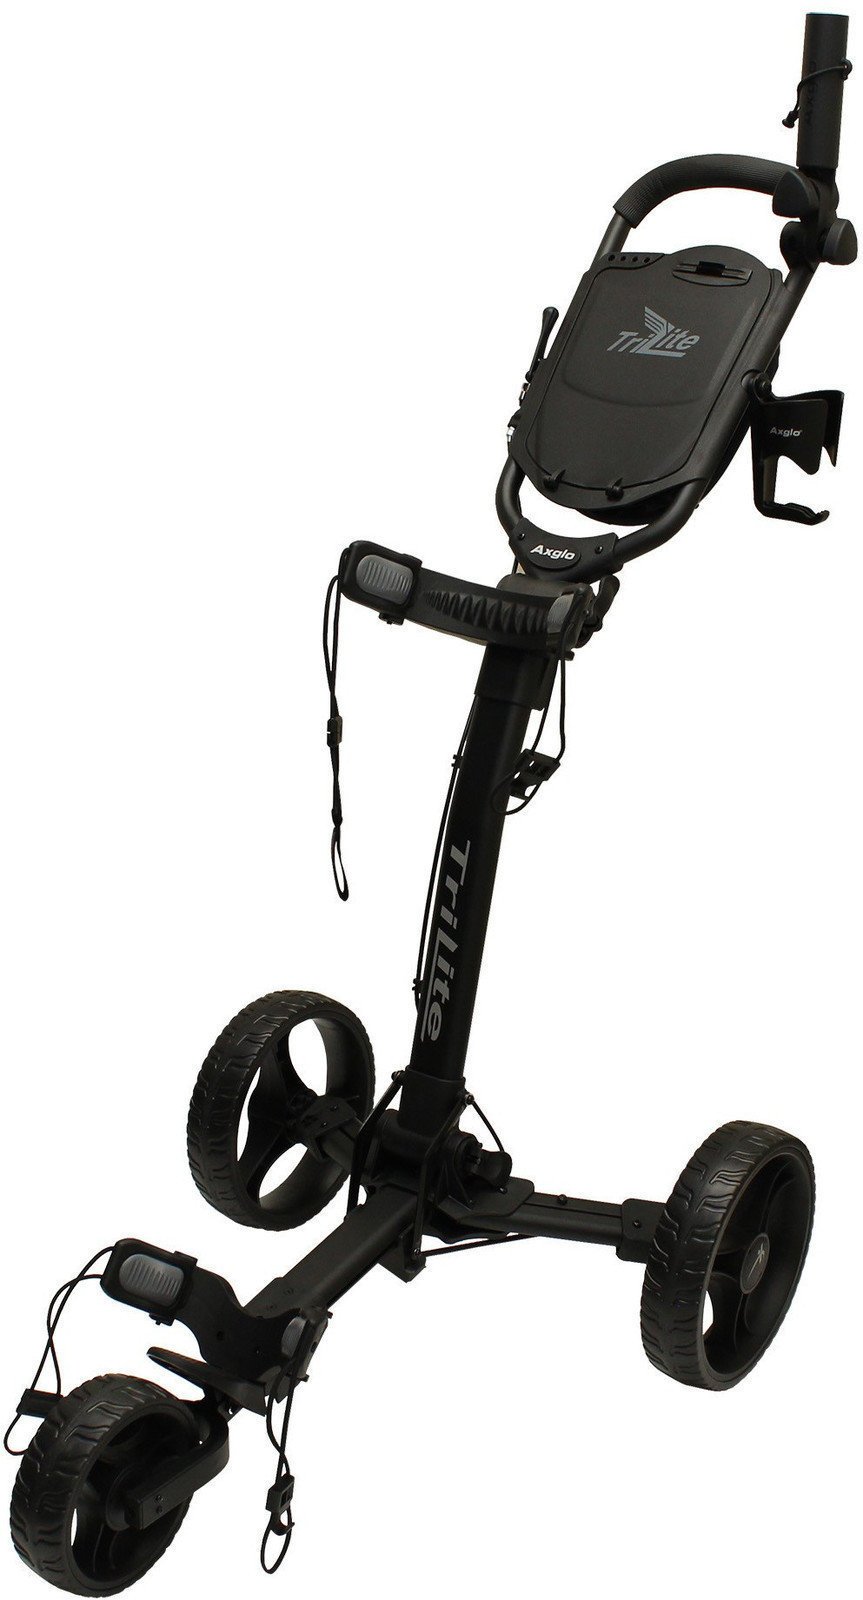 Wózek golfowy ręczny Axglo TriLite Black/Black Wózek golfowy ręczny